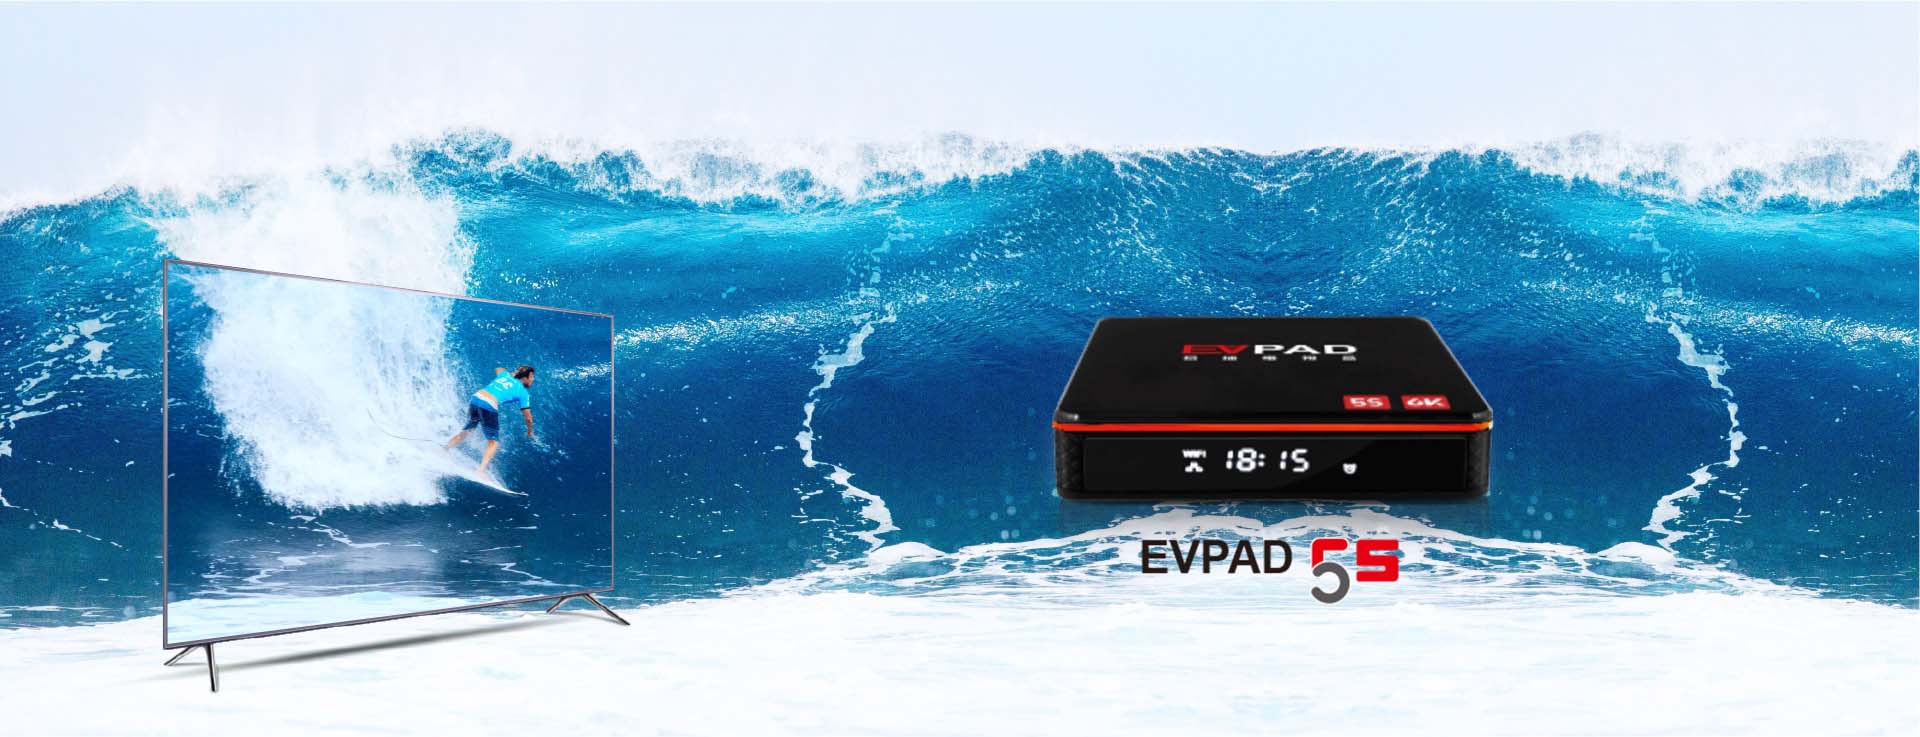 EVPAD 5S - 'S WERELDS EERSTE STEMGEACTIVEERDE AI TV-BOX